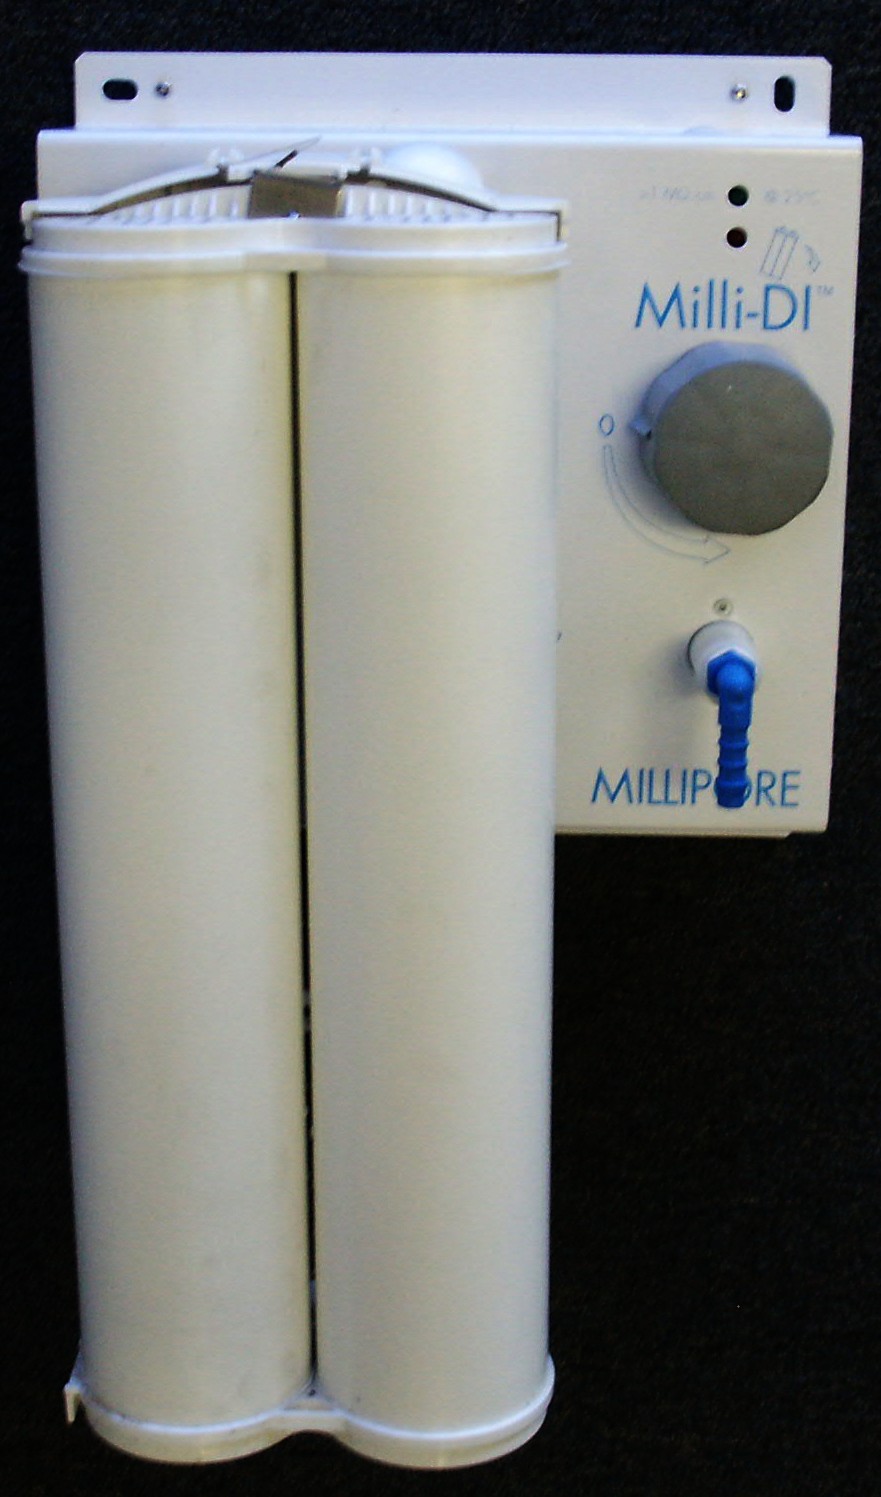 Filters for Millipore Milli-DI Deionization systems